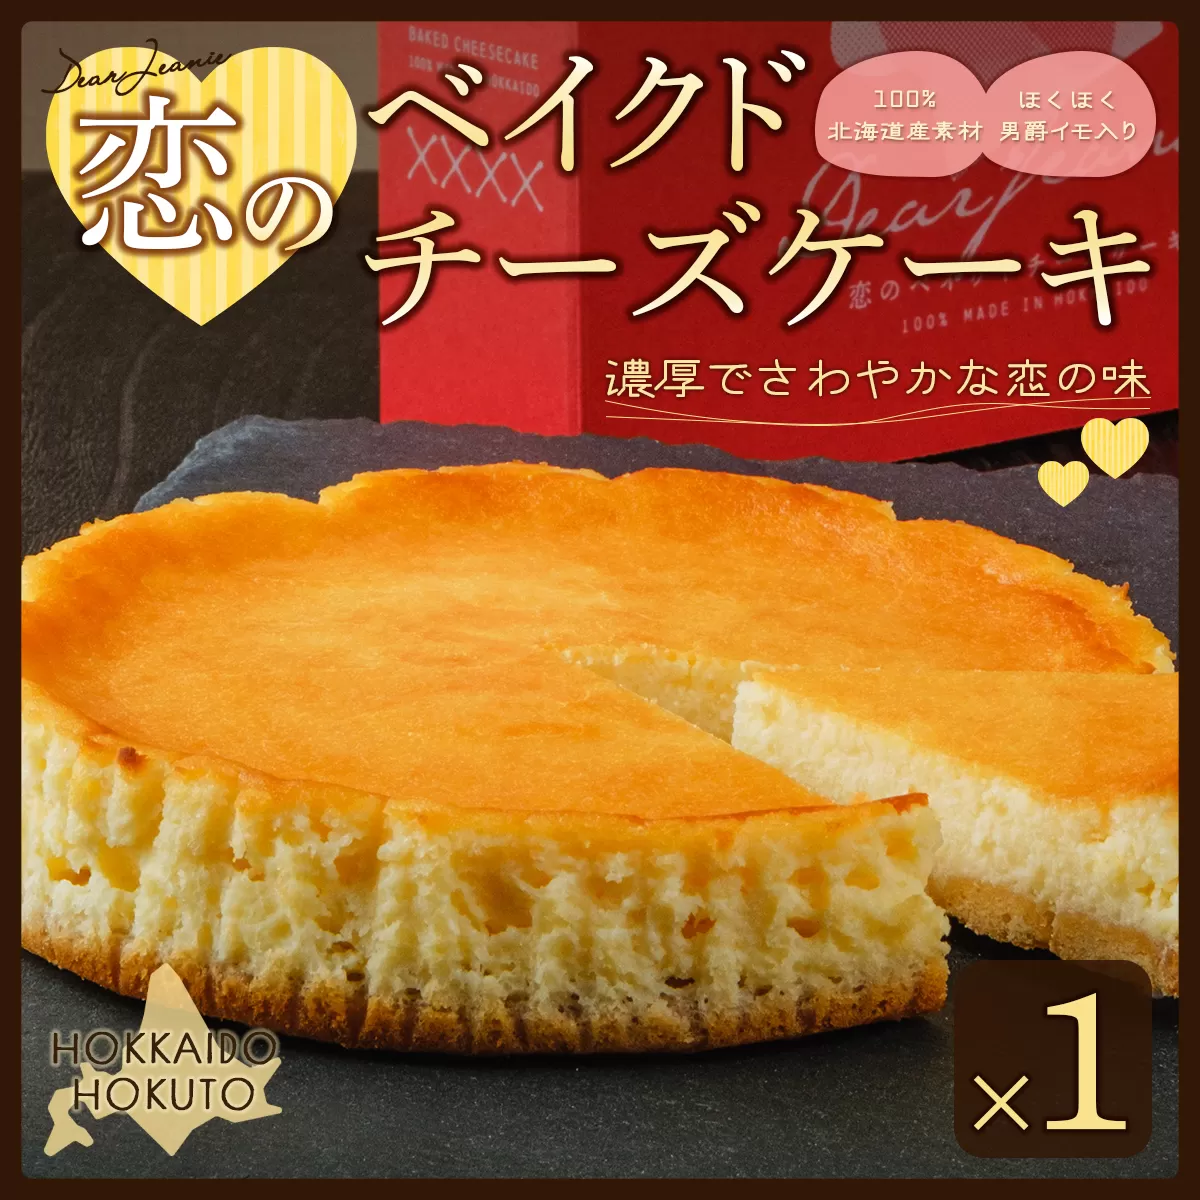 恋のベイクドチーズケーキ HOKU006